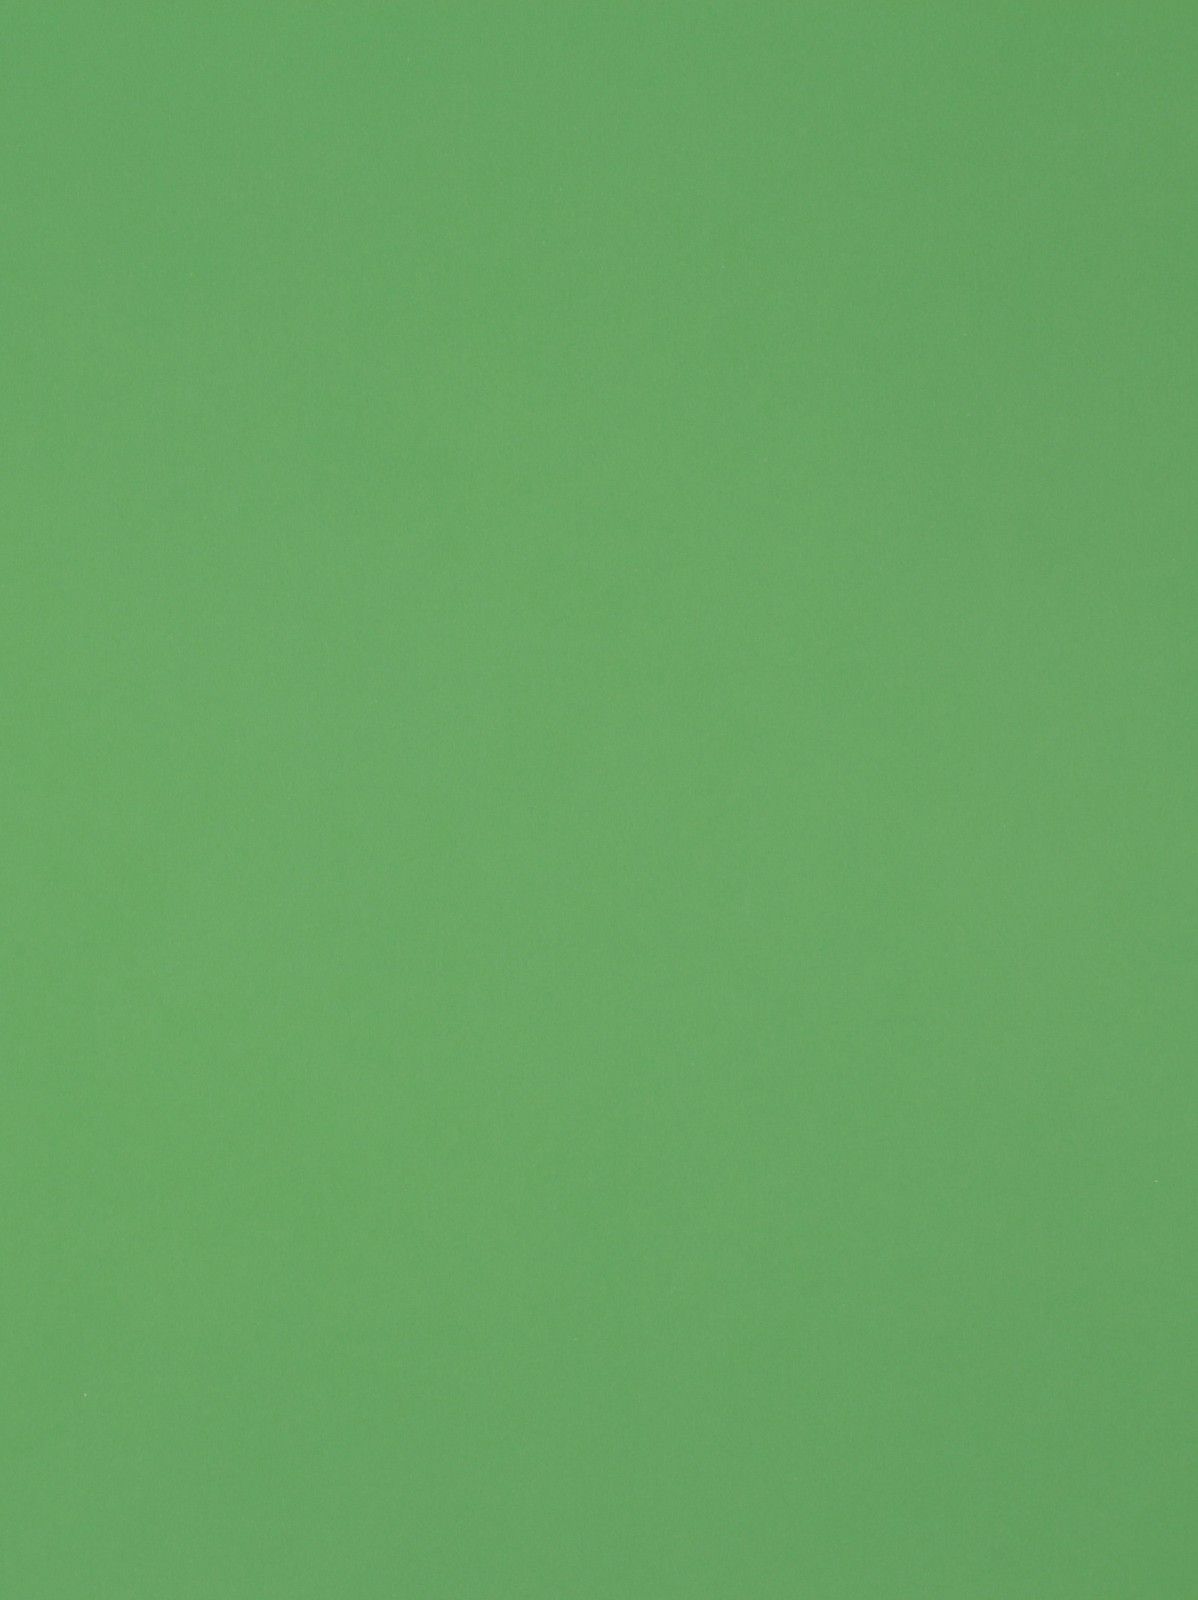 Fondos de pantalla de color verde liso